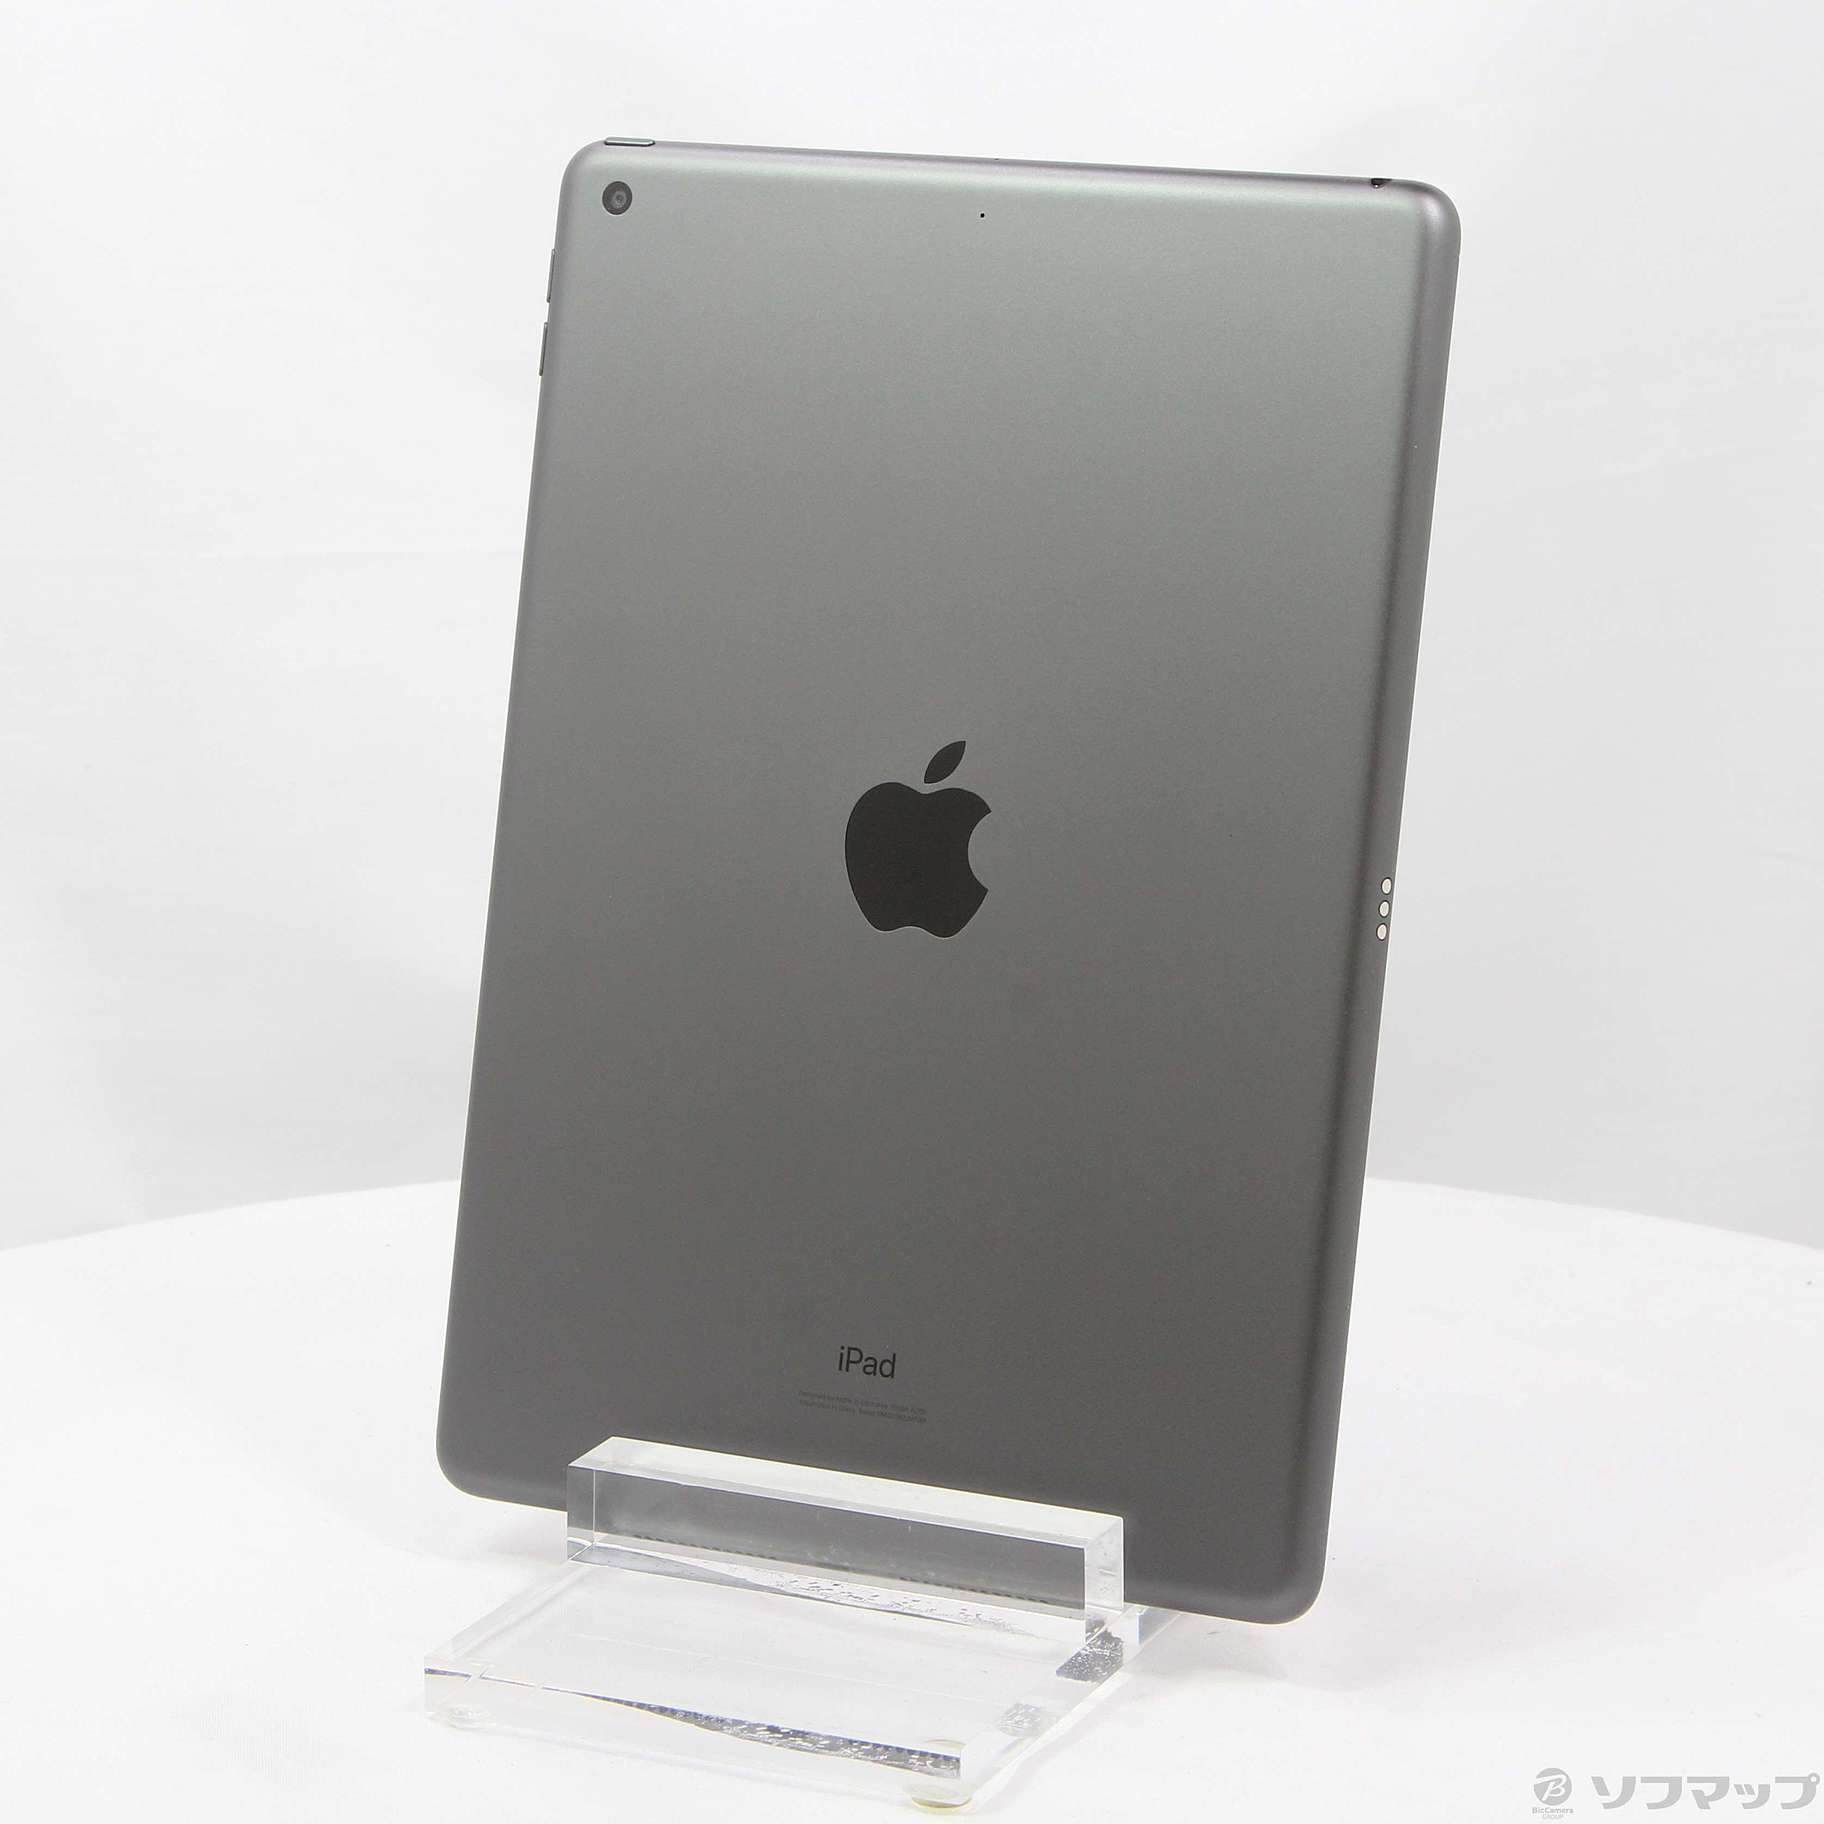 (中古)Apple iPad 第7世代 32GB スペースグレイ MW742J/A Wi-Fi(381-ud)